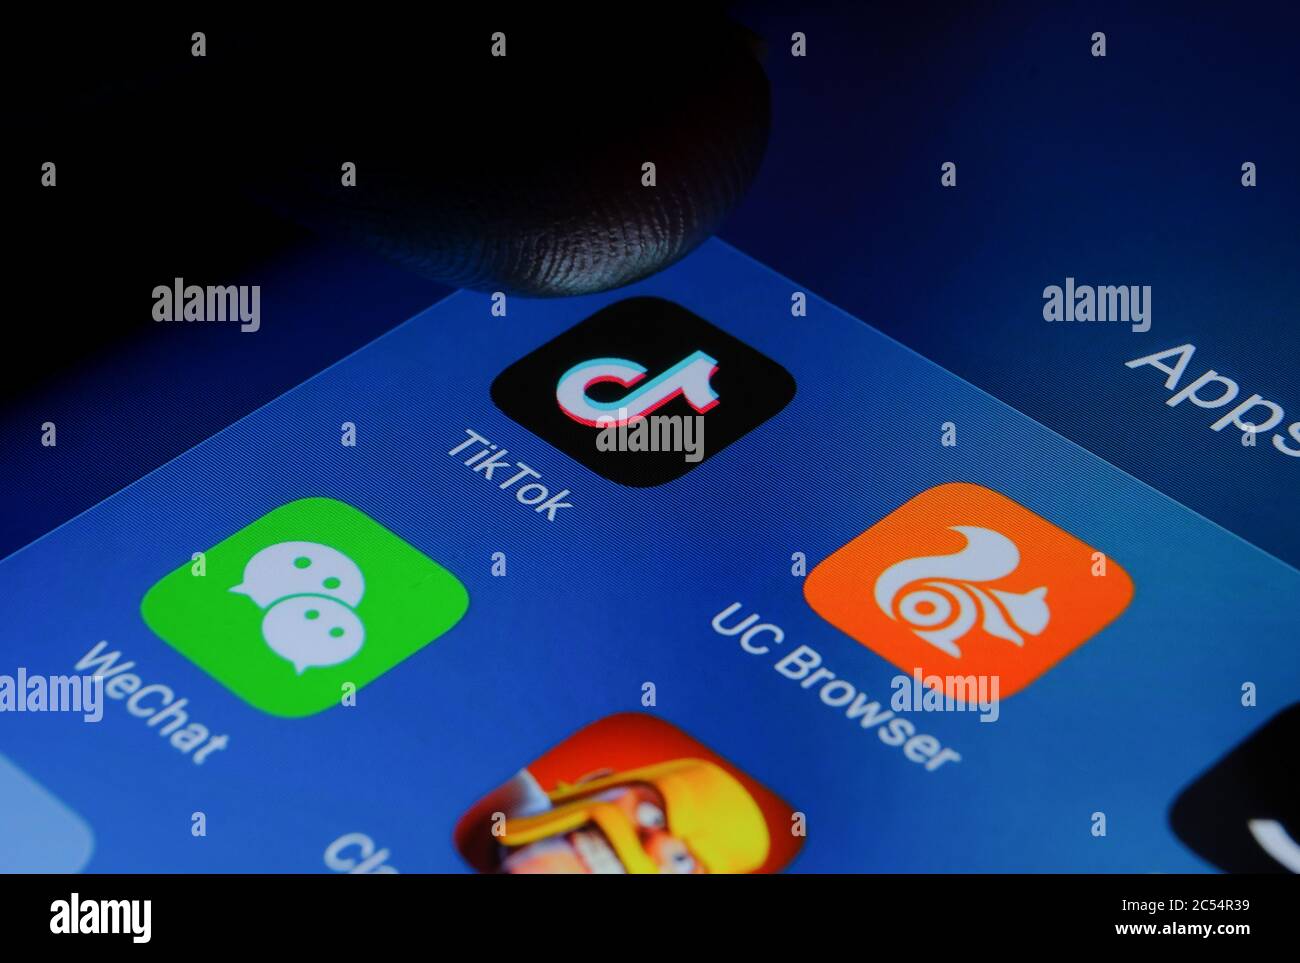 Tiktok, WeChat, UC Browser, Clash of Clans apps y el dedo apuntando a ellos. Foto de las aplicaciones chinas que fueron prohibidas en la India debido a preocupaciones de seguridad. Foto de stock